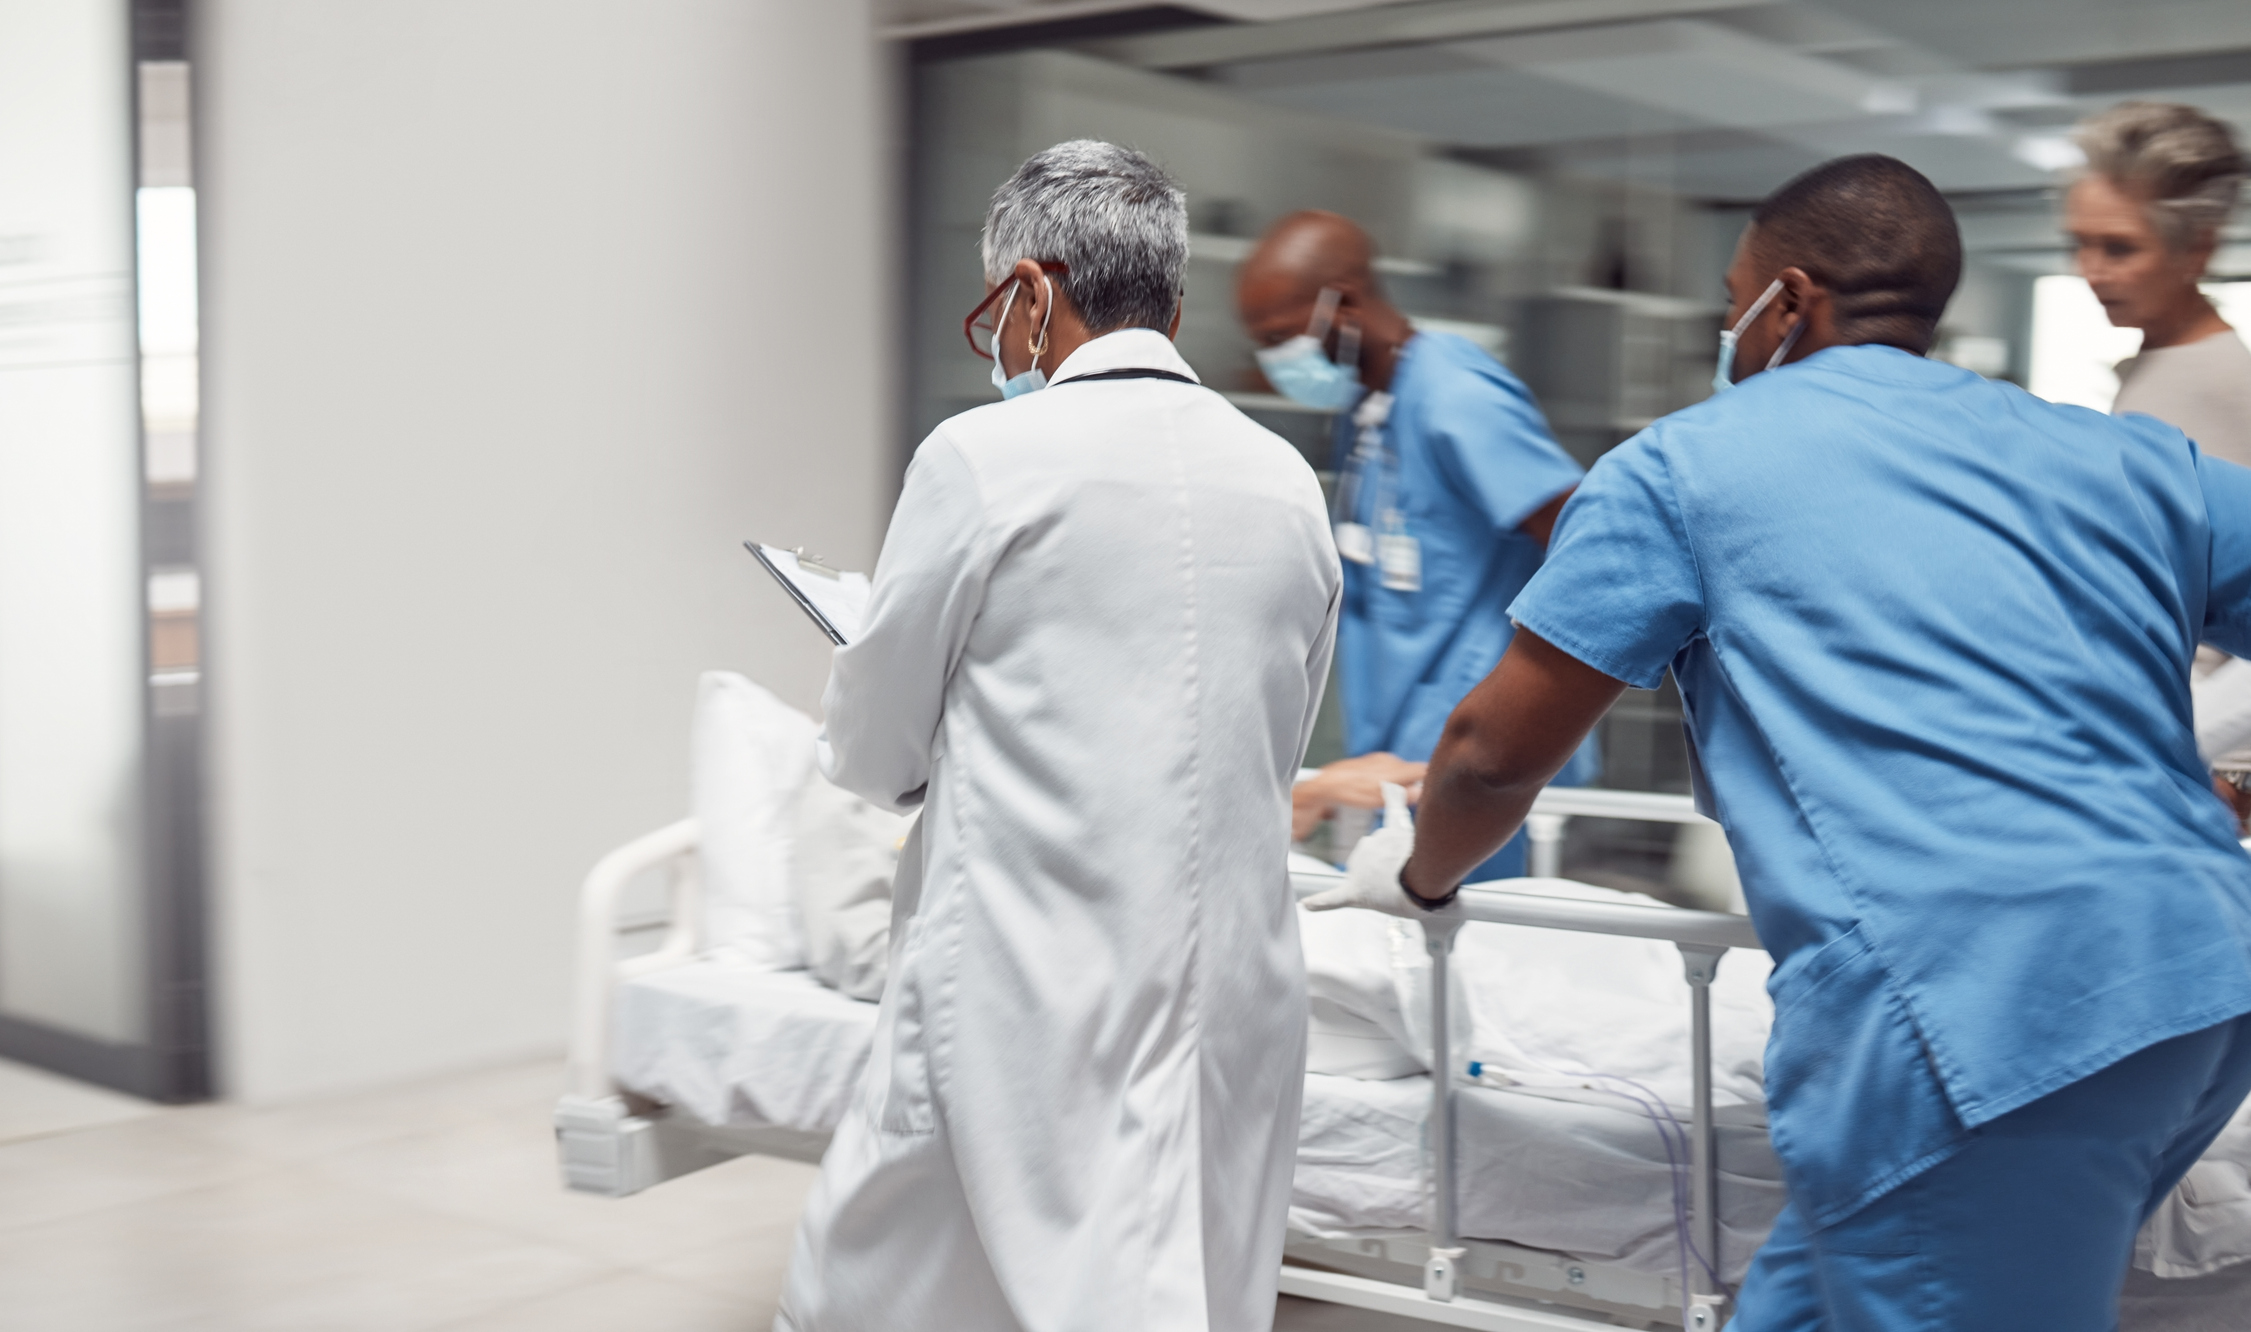 Ocupados, profissionais de saúde e médicos correm com paciente em maca, pronto para procedimento no hospital.